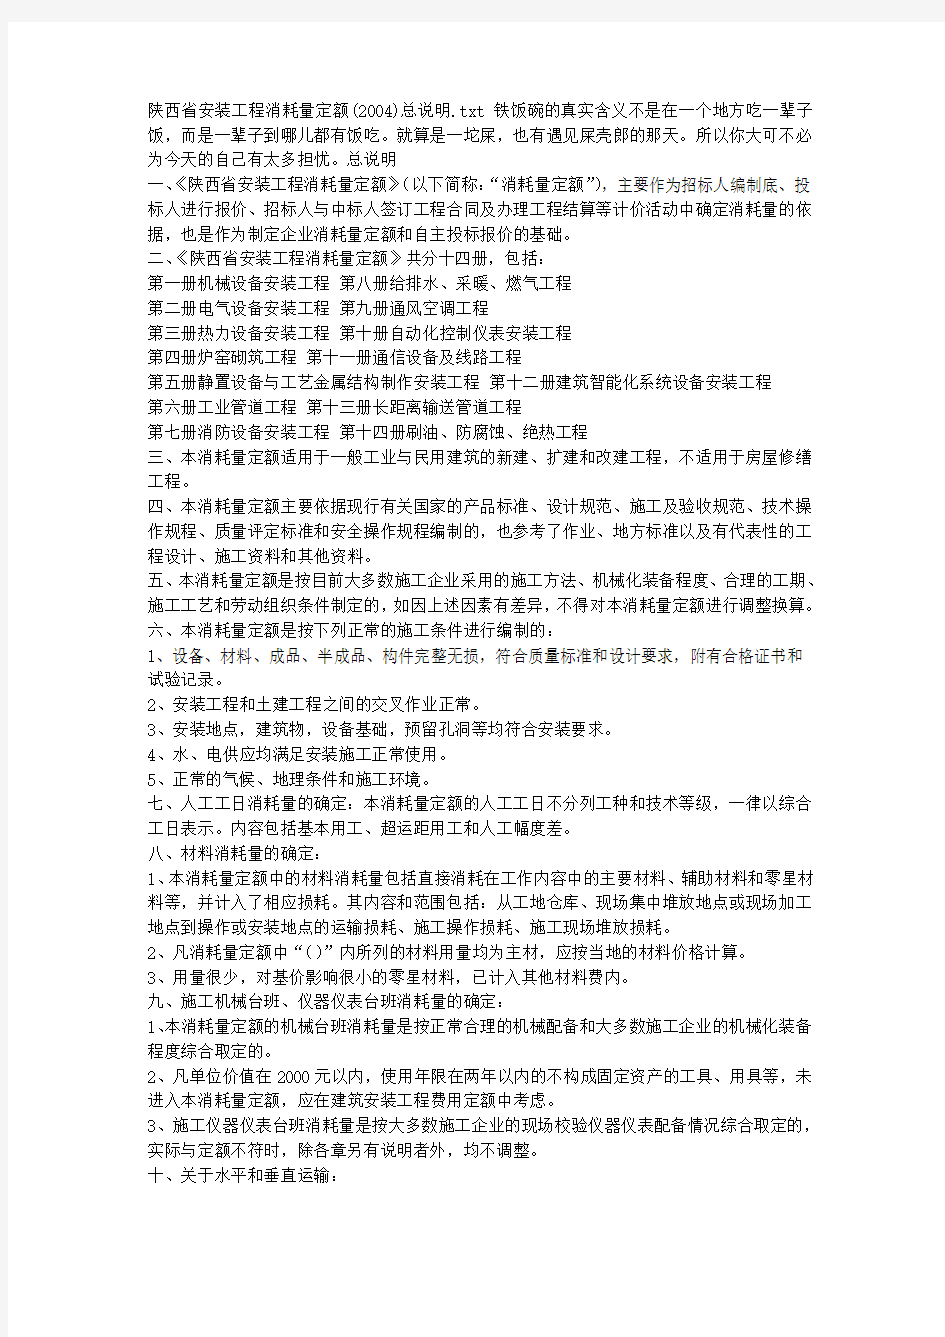 陕西省安装工程消耗量定额(2004)总说明